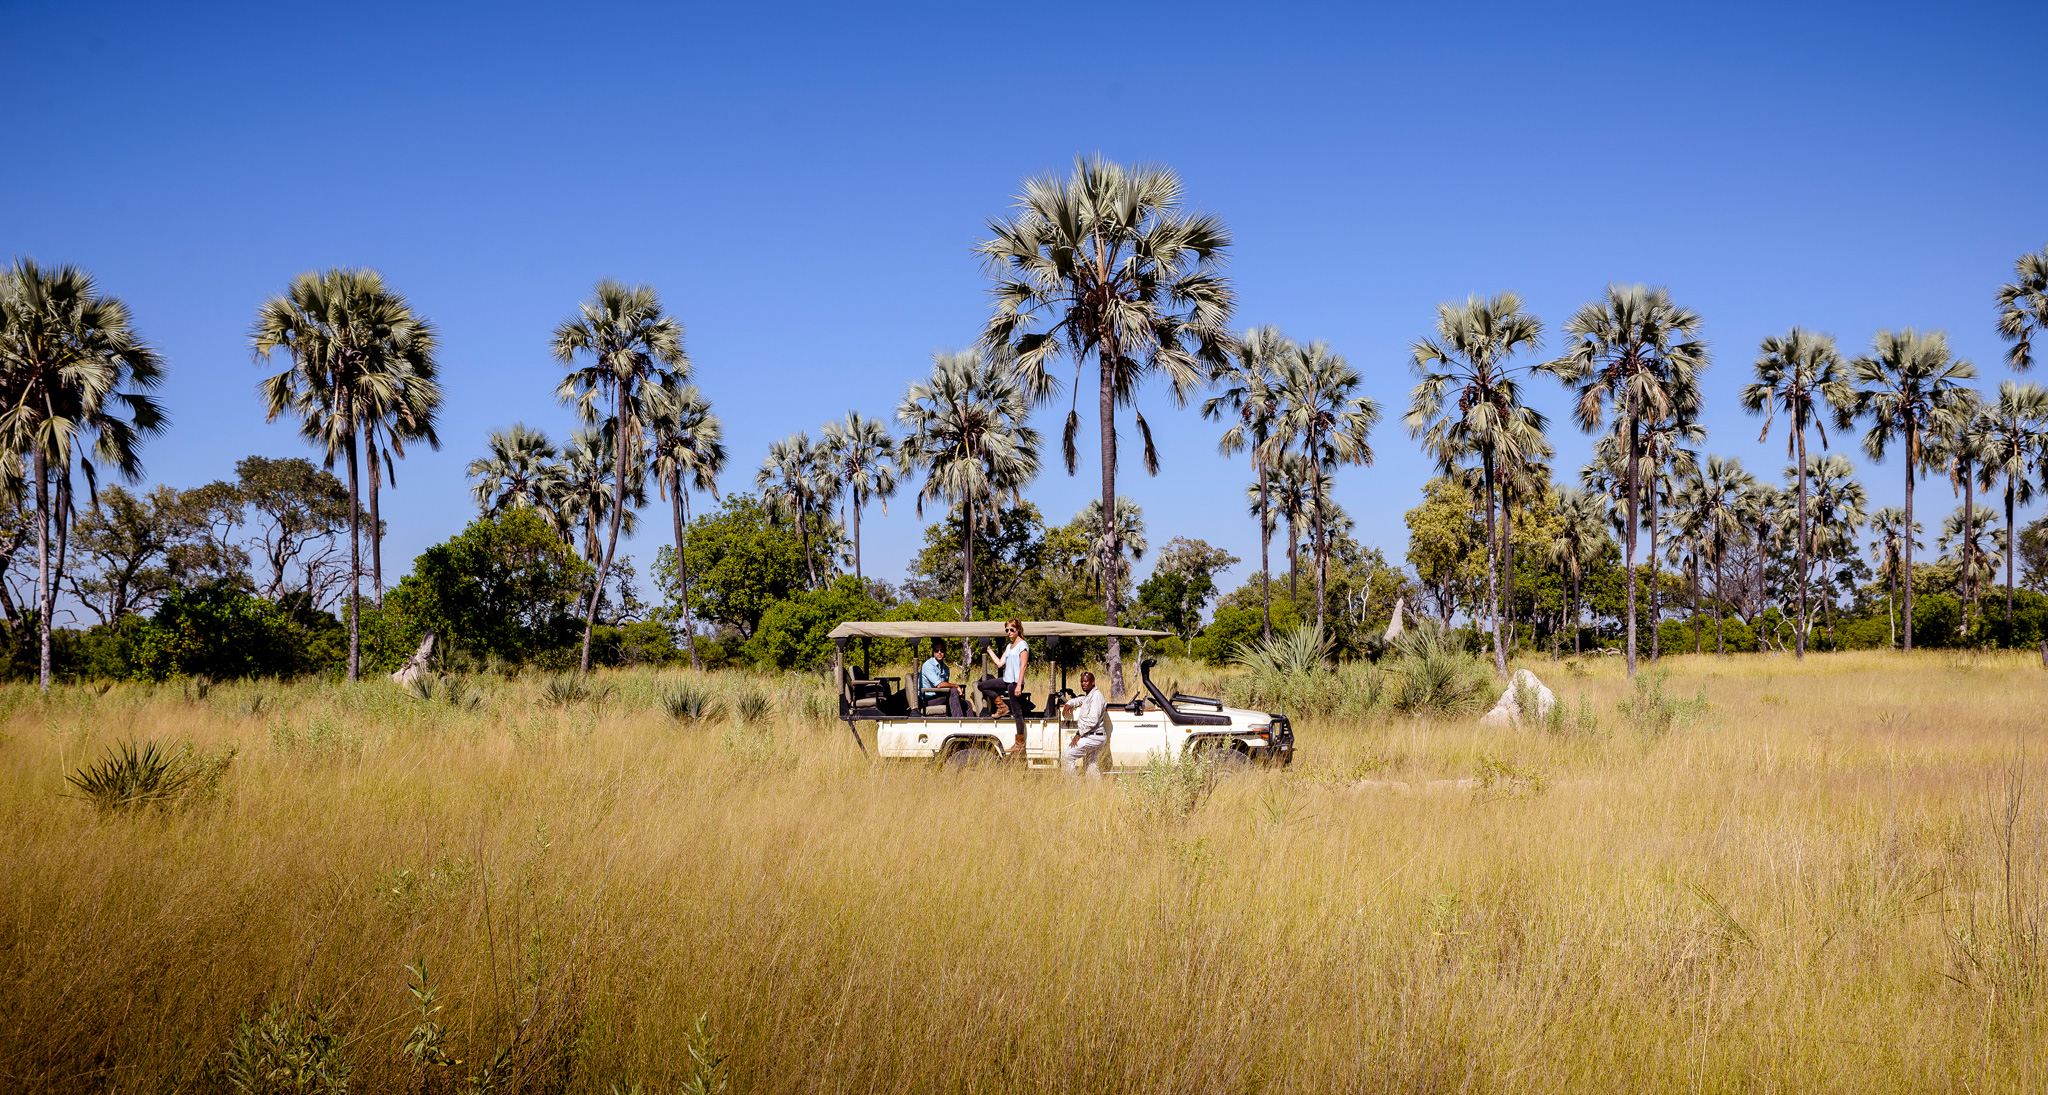 véhicule Safaris dans la savane jaune palmiers dans ciel bleu